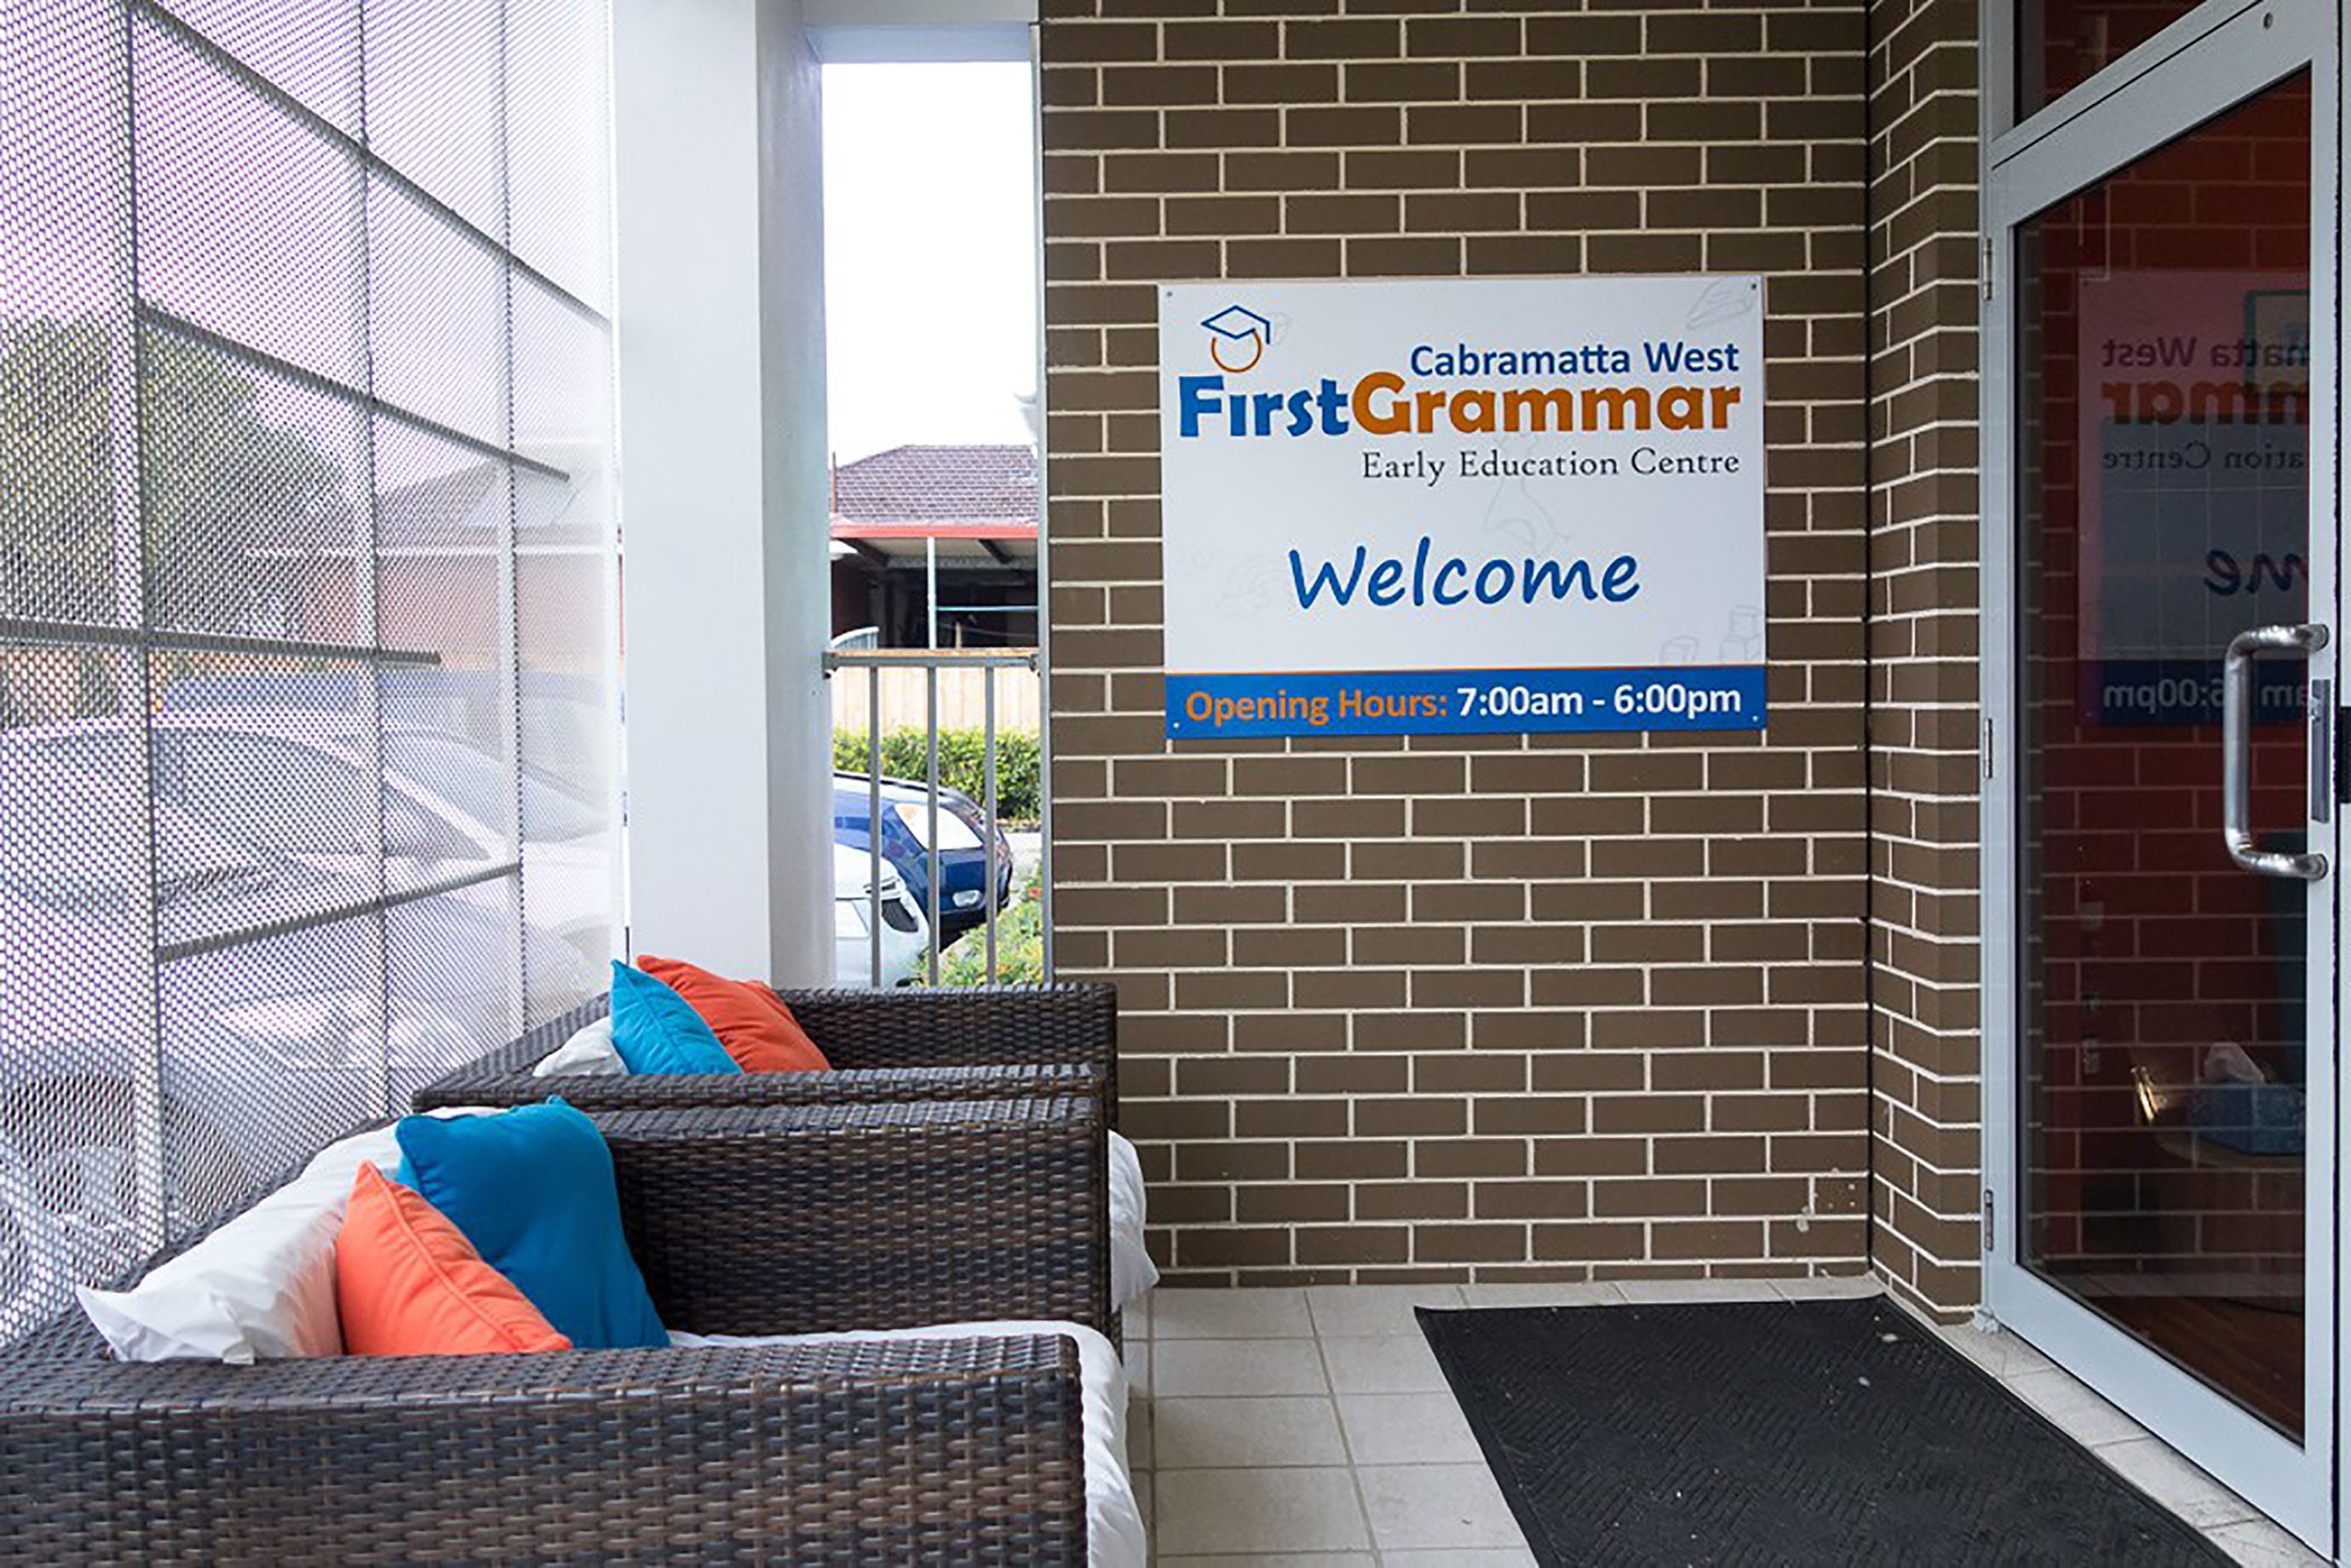 Front entrance to Cabramatta West First Grammar